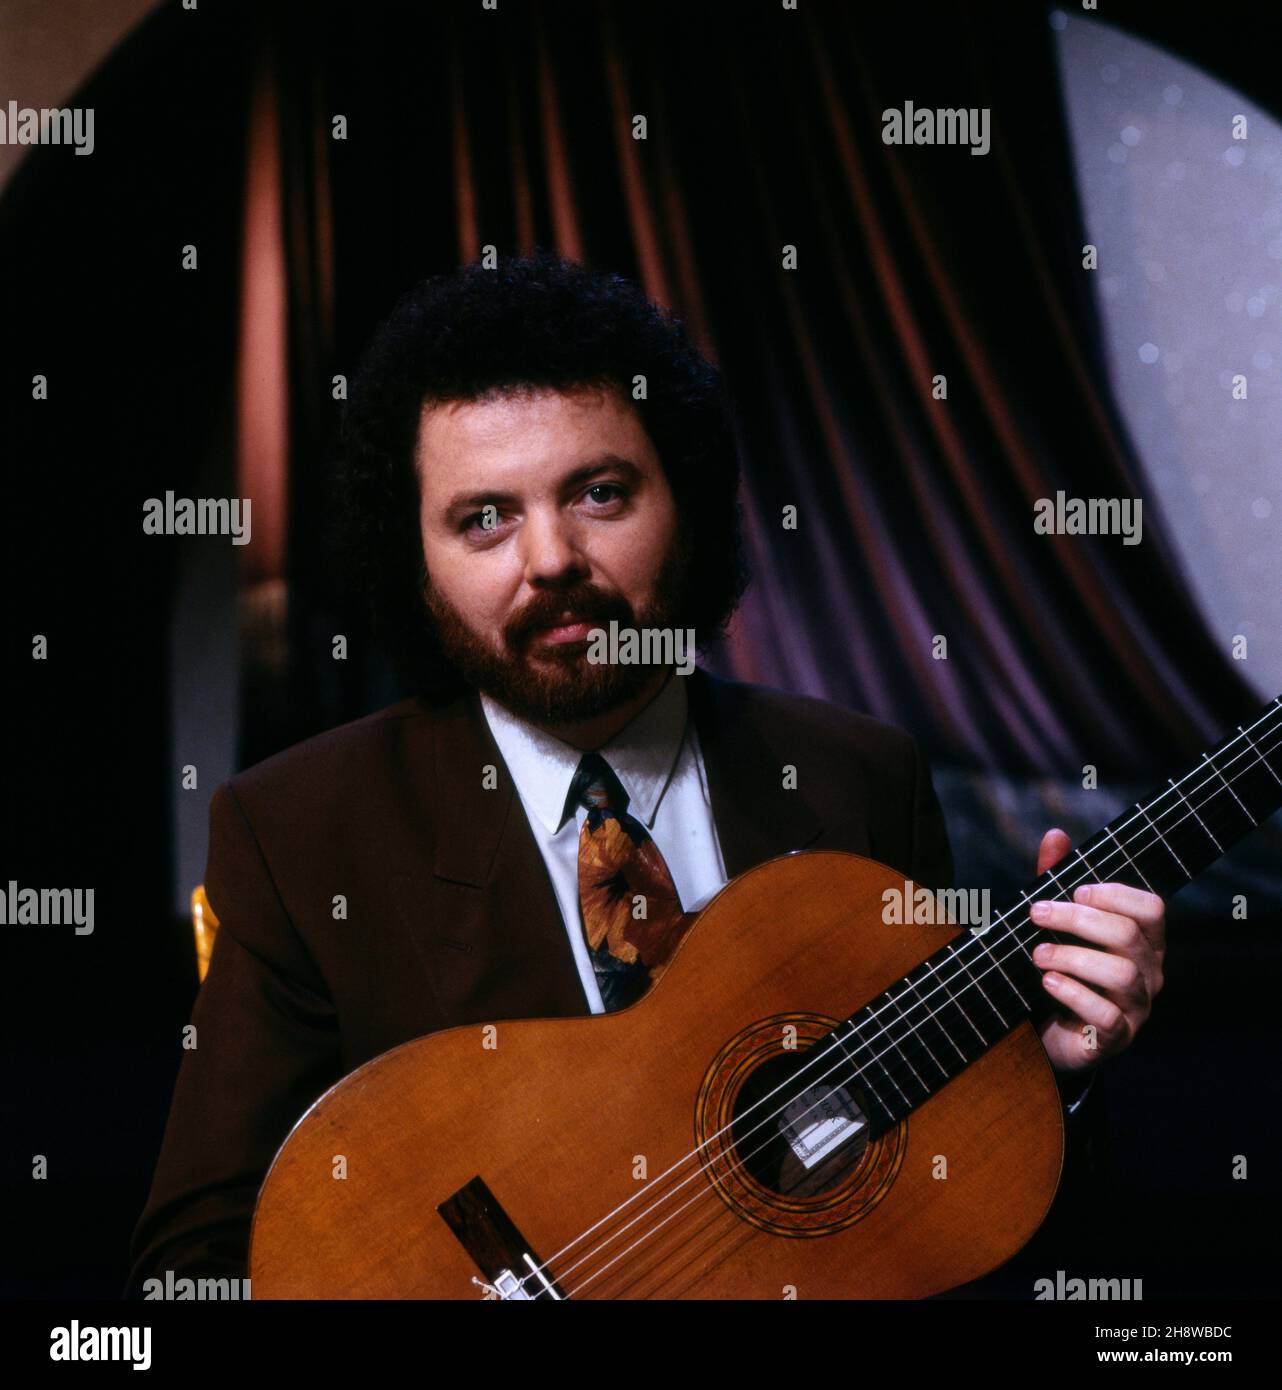 Manuel Barrueco, Klassischer Gitarrist aus Kuba, Ritratto 1992. Manuel Barruedo, chitarrista cubano di musica classica, ritratto 1992. Foto Stock